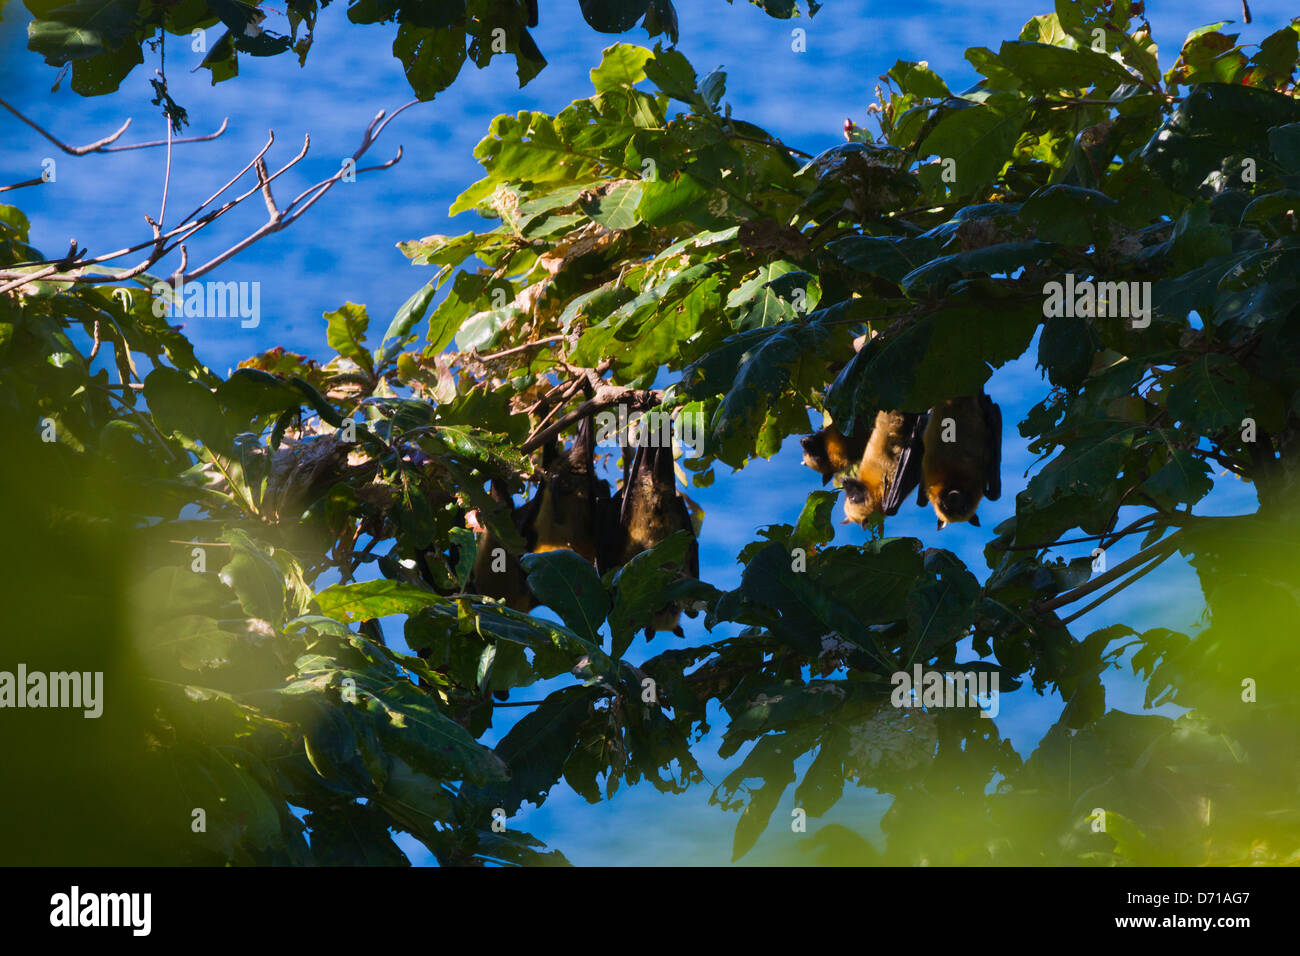 Bats hanging from the tree, Nosy Komba, Madagascar Stock Photo